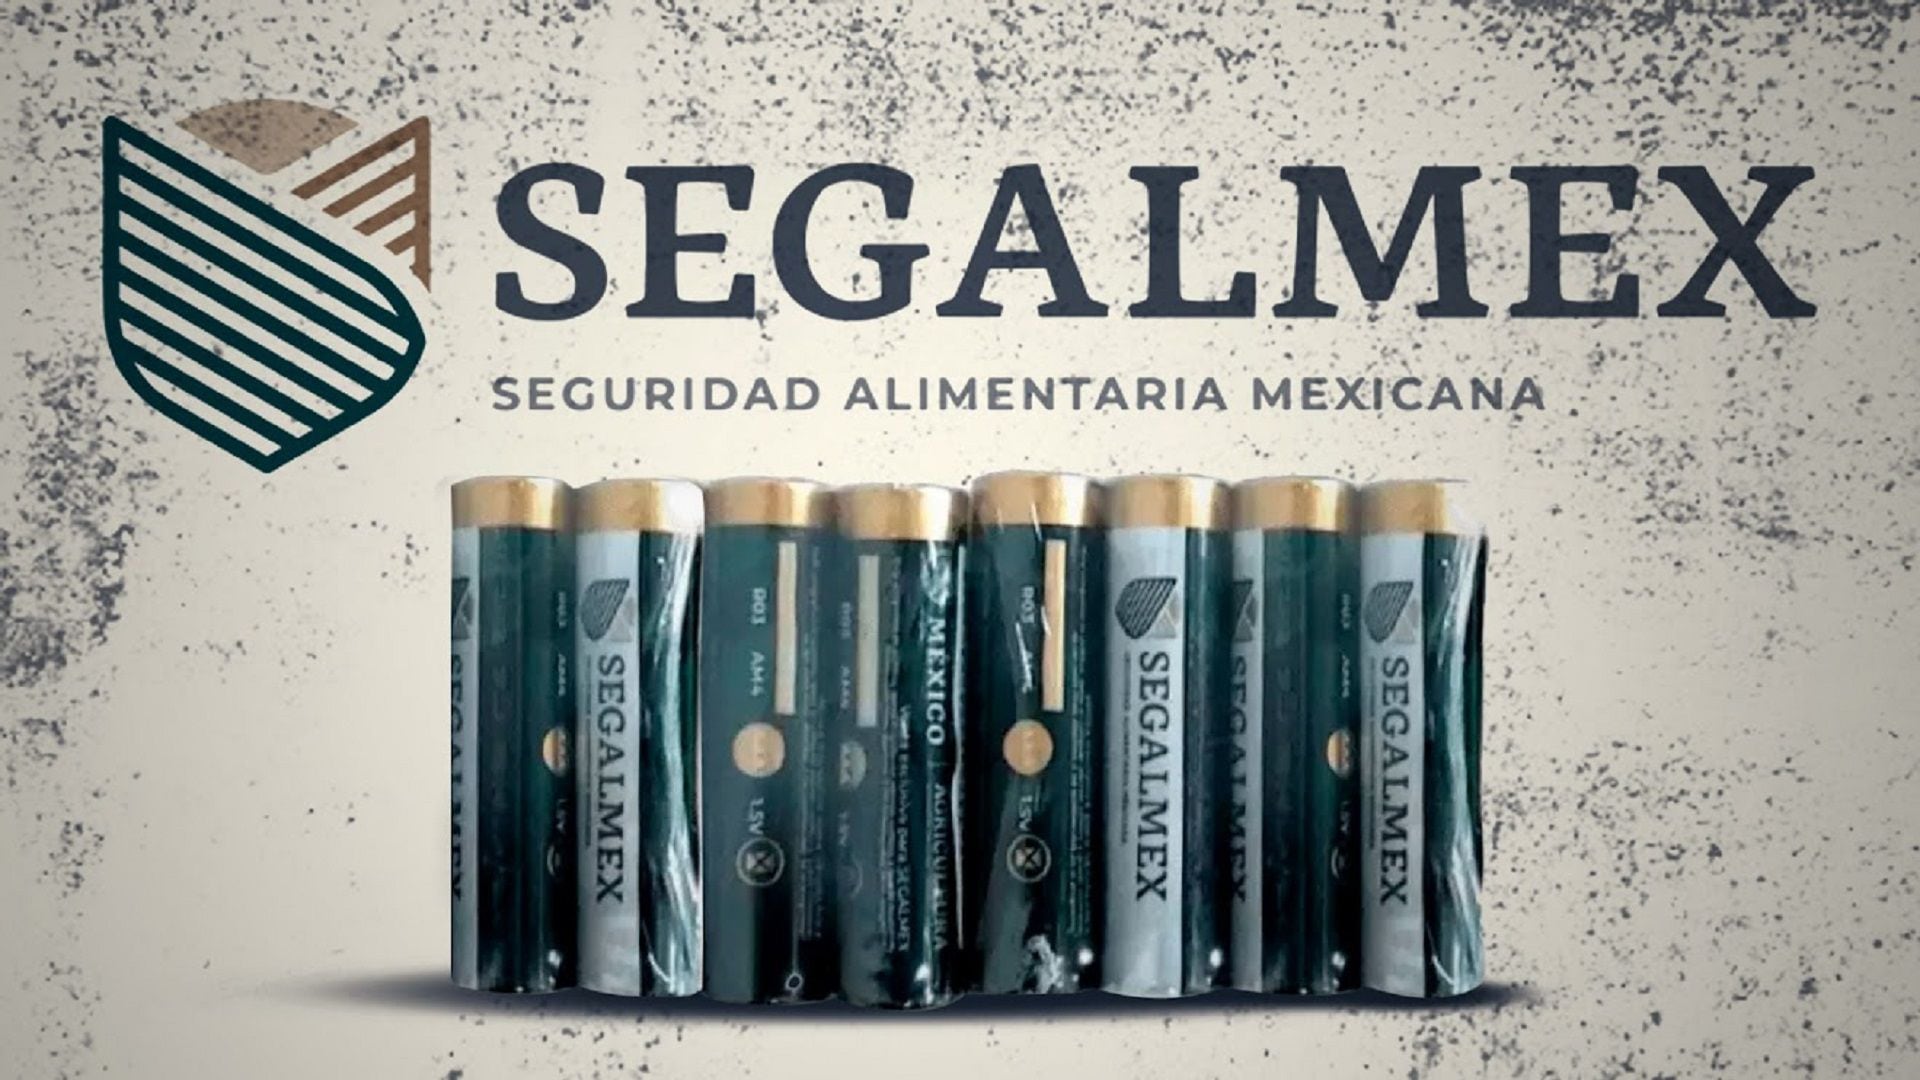 Las pilas de Segalmex se venden en algunos países de Europa del este. (Jesús Áviles/Infobae)